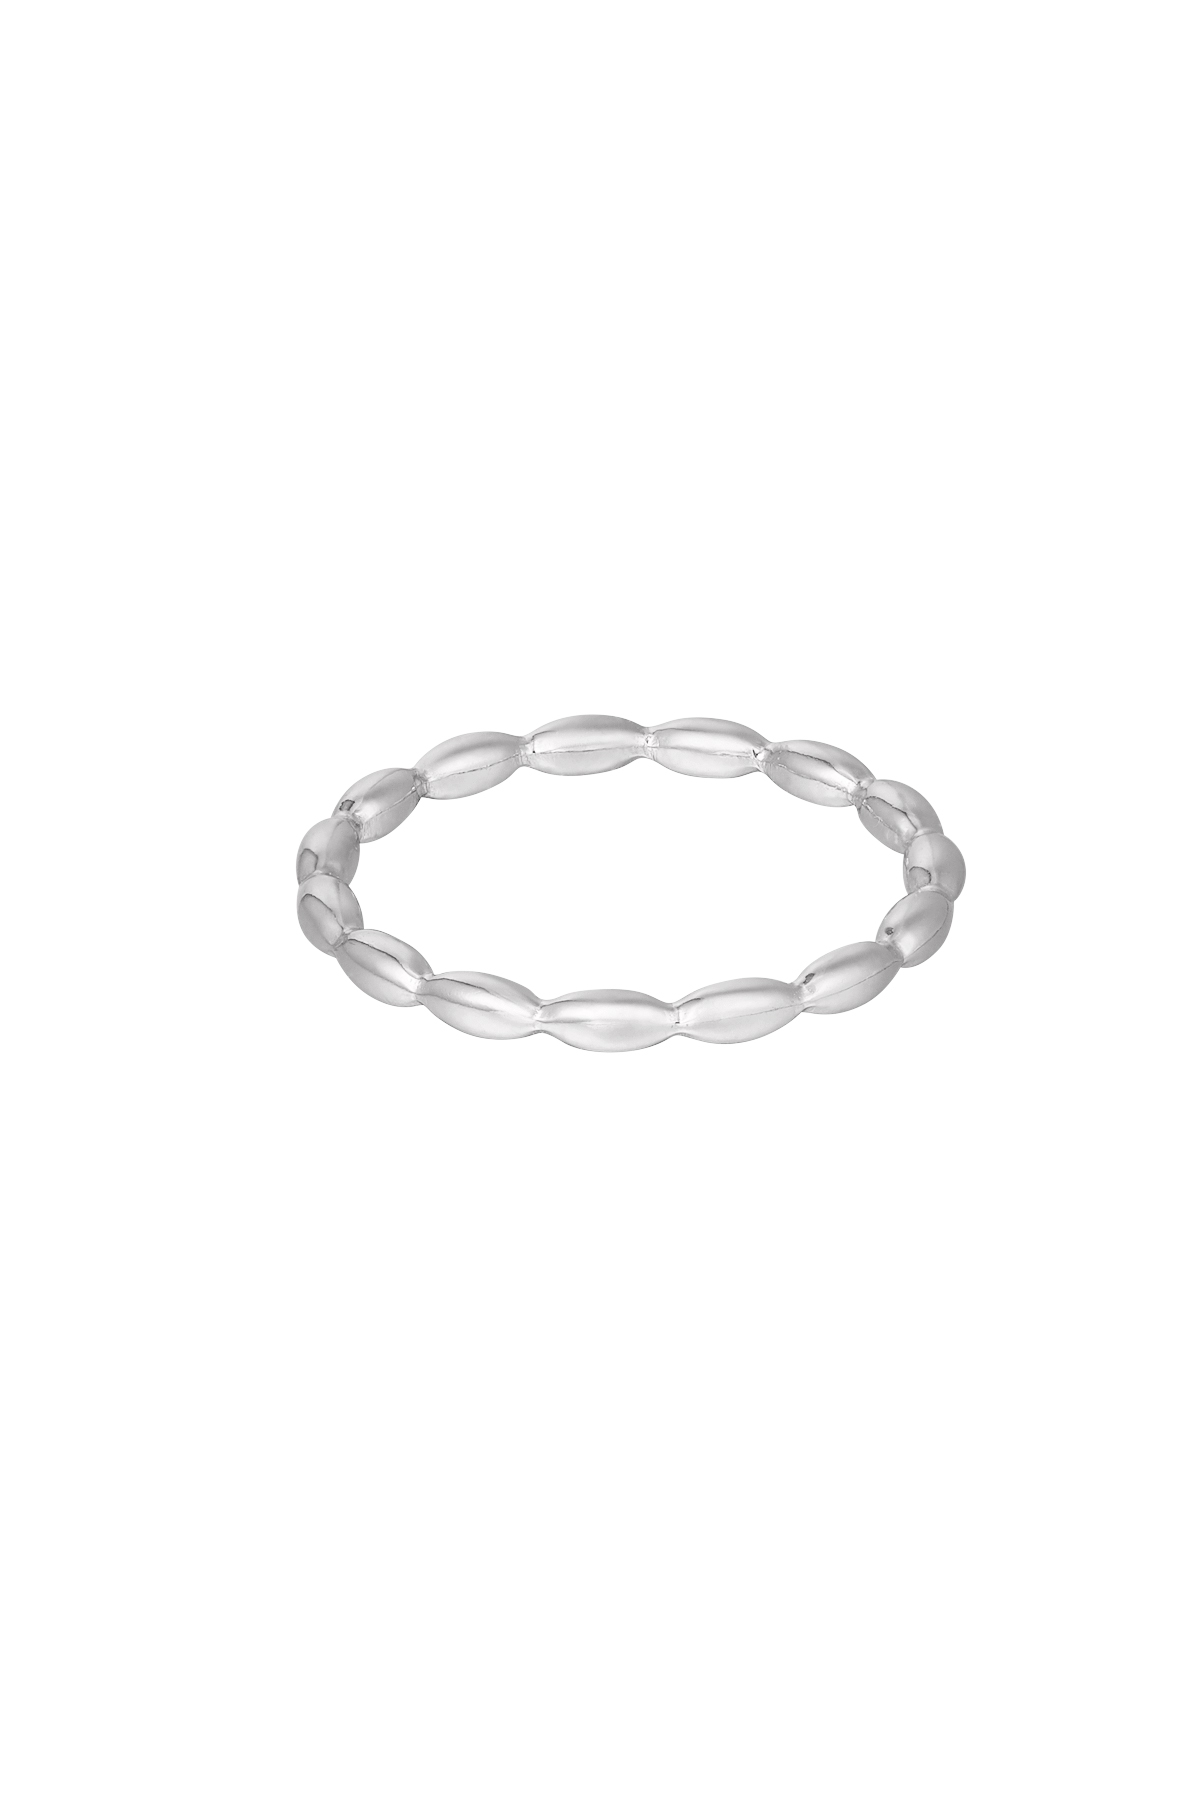 Anello ovali collegati - argento h5 